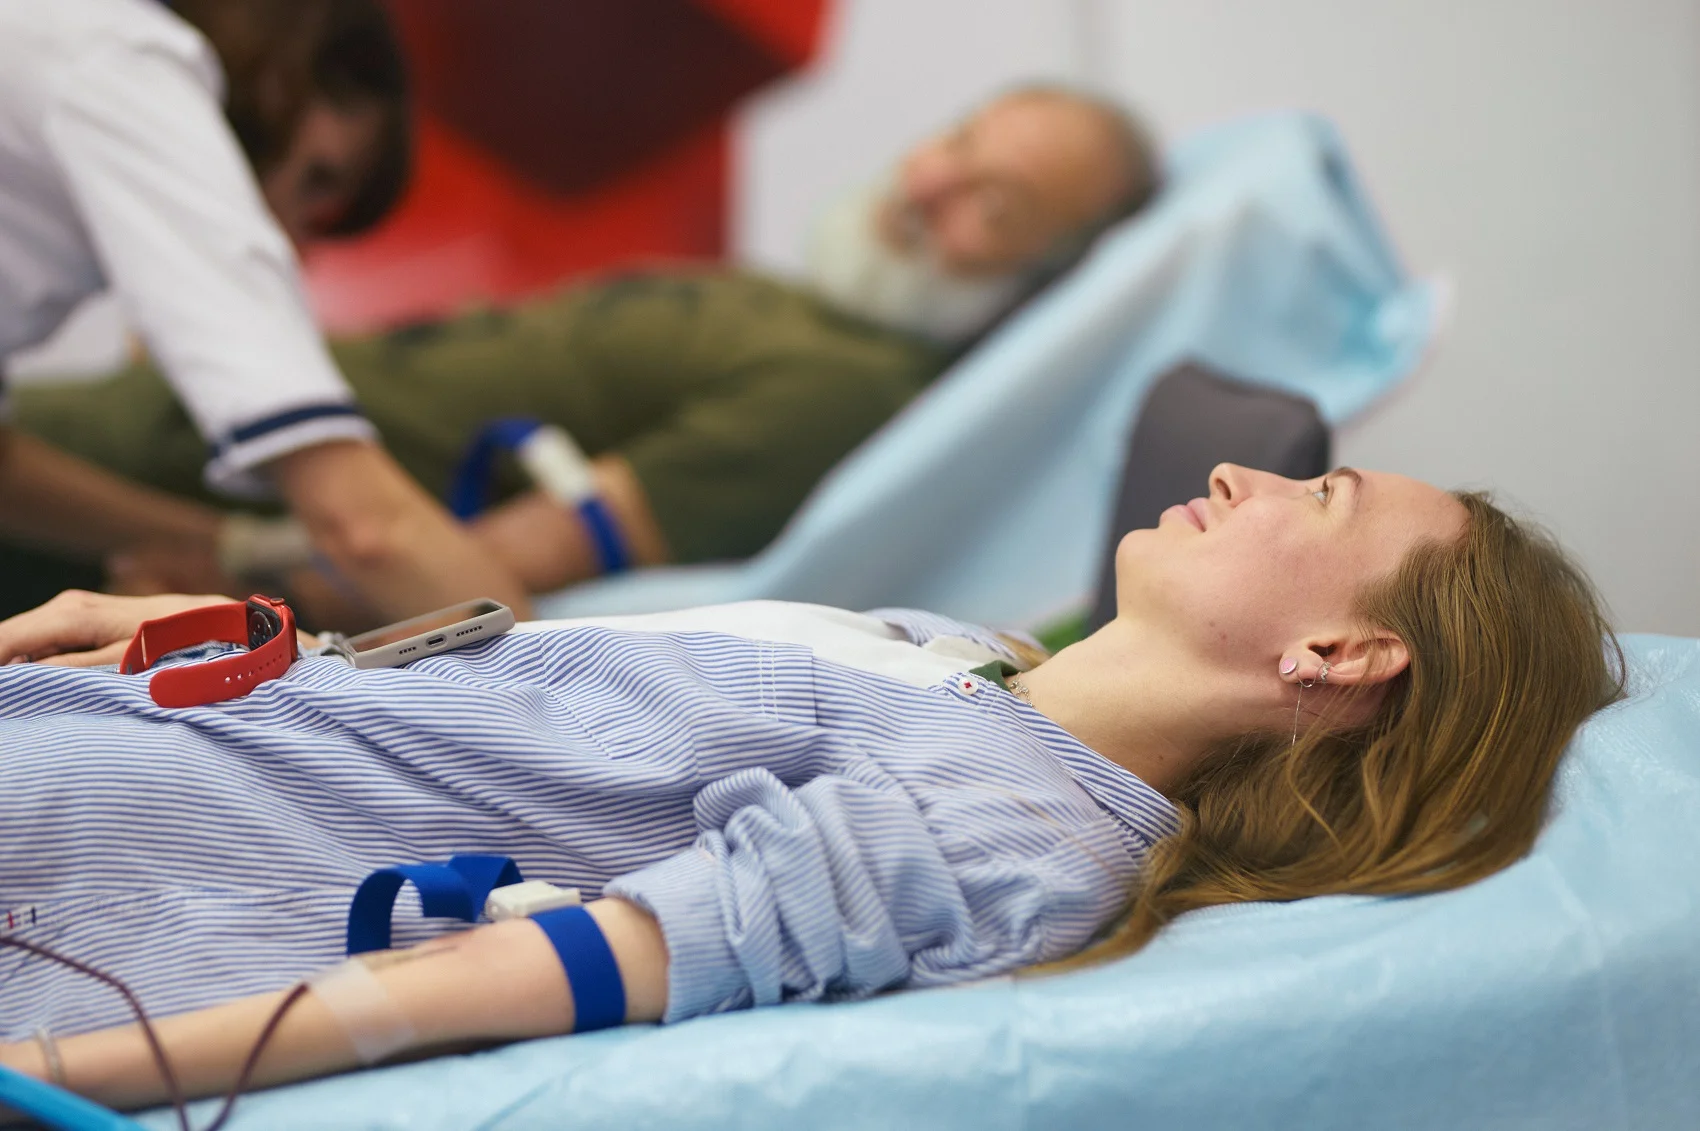 42 співробітники Vodafone здали кров напередодні Всесвітнього дня донора